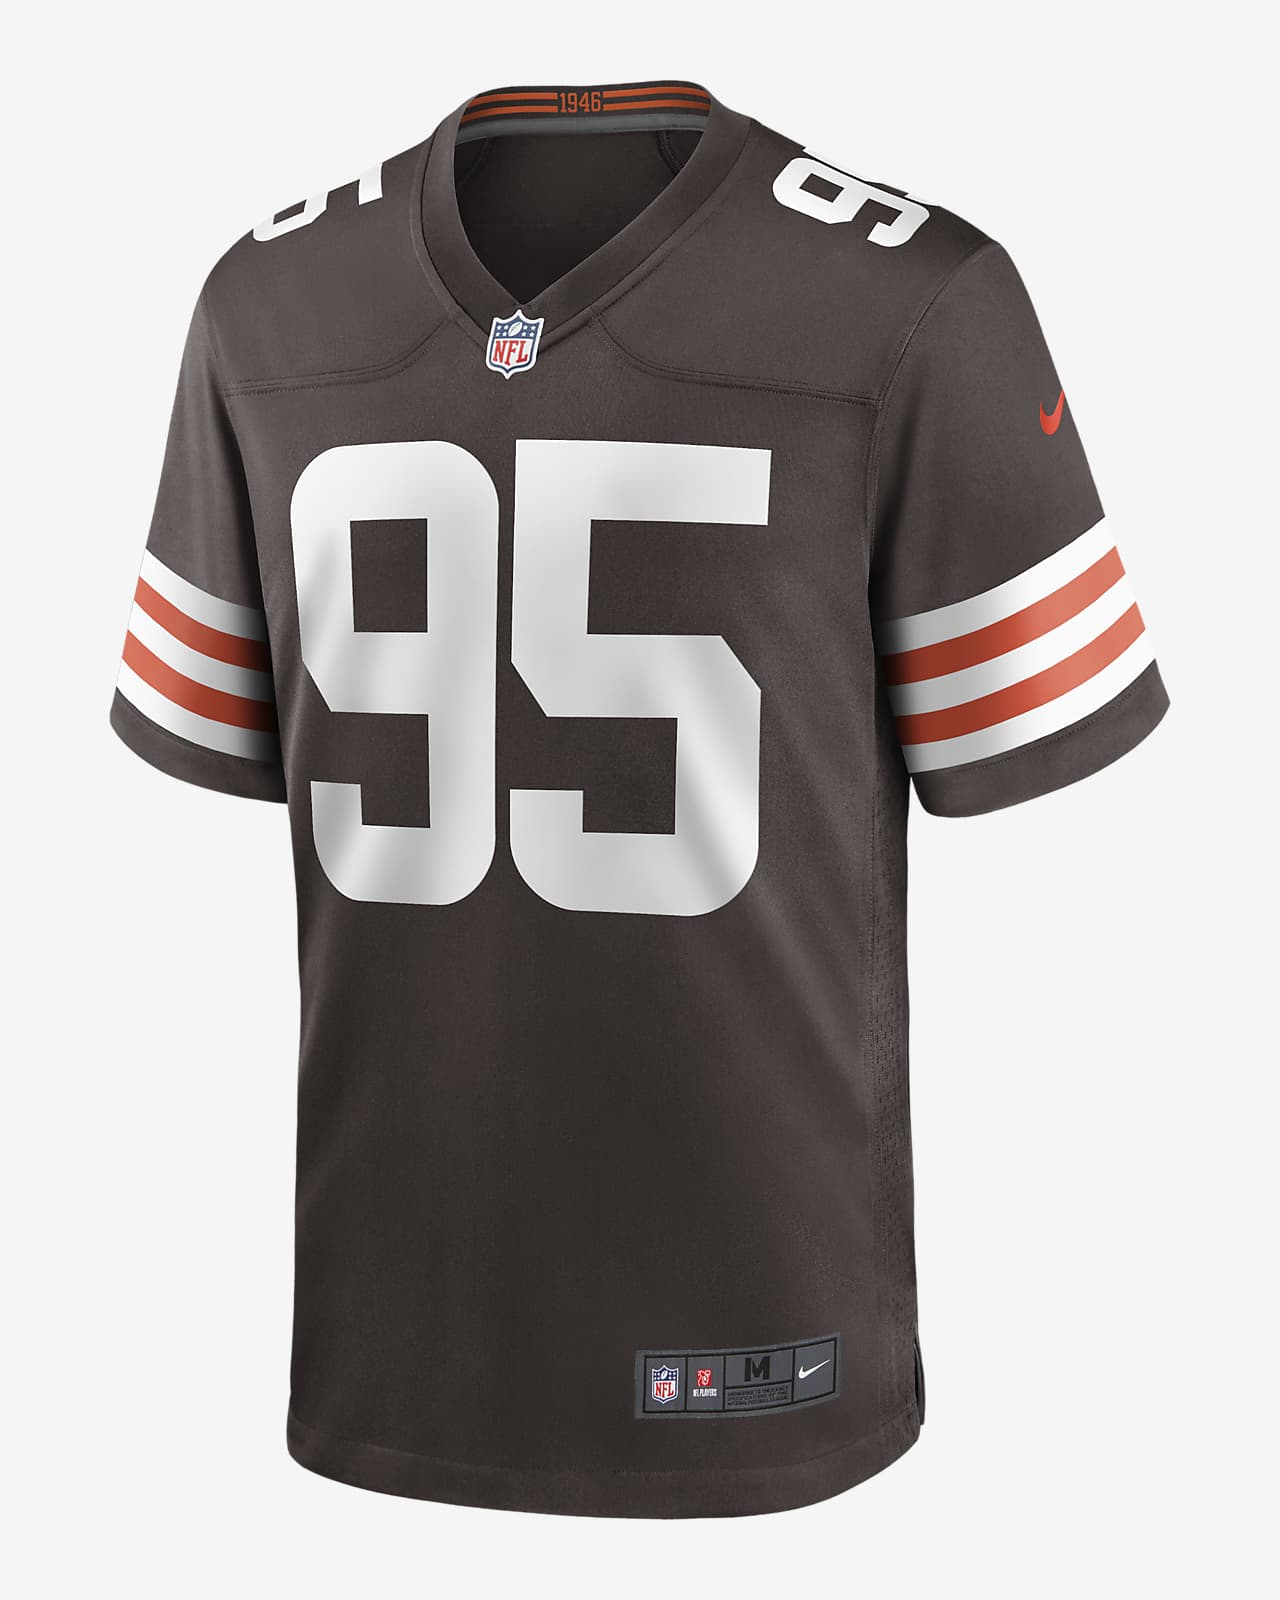 NFL Cleveland Browns (Myles Garrett) Men's Game Football Jersey. Nike.com